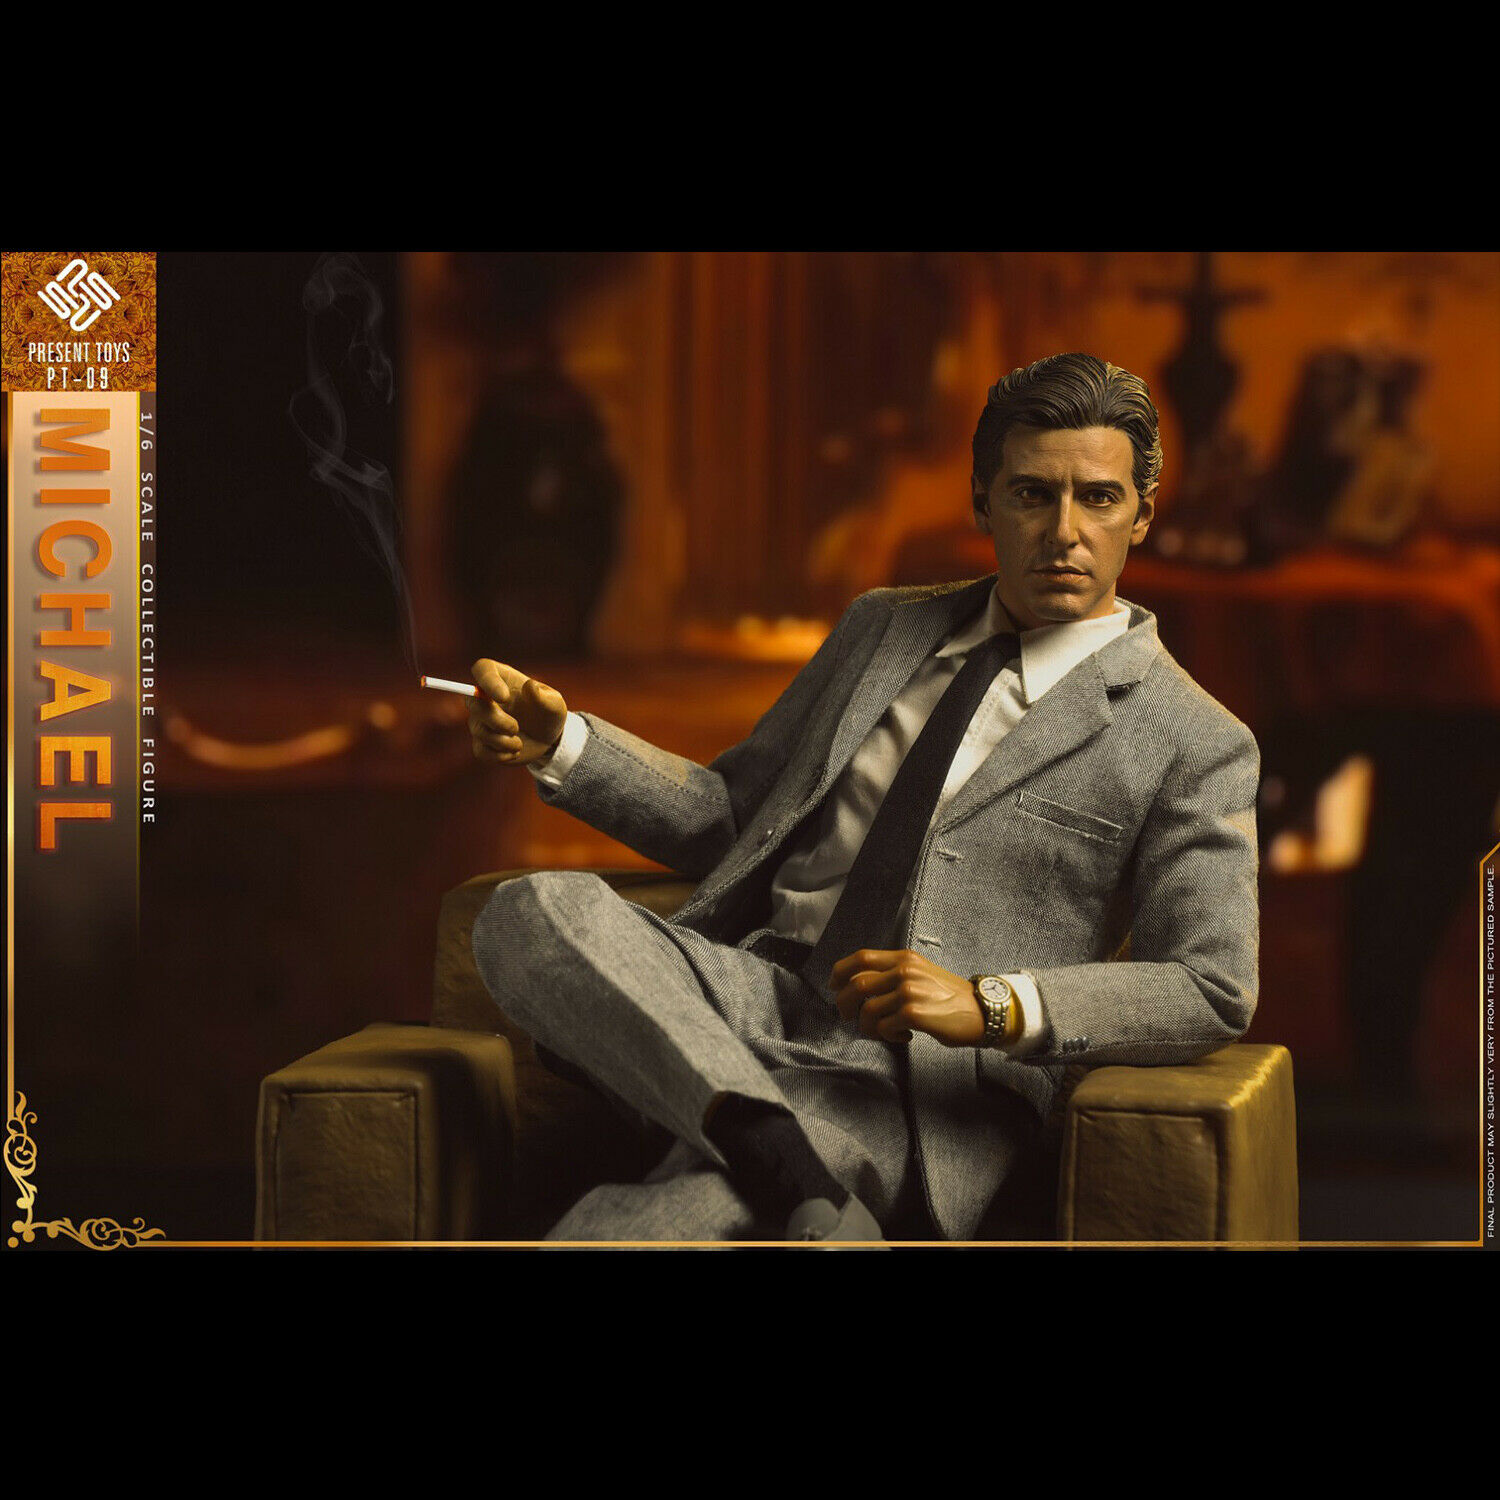 Michael Corleone Godfather Keychain Schlüsselanhänger 6 cm Pokis Figur SD Toys 